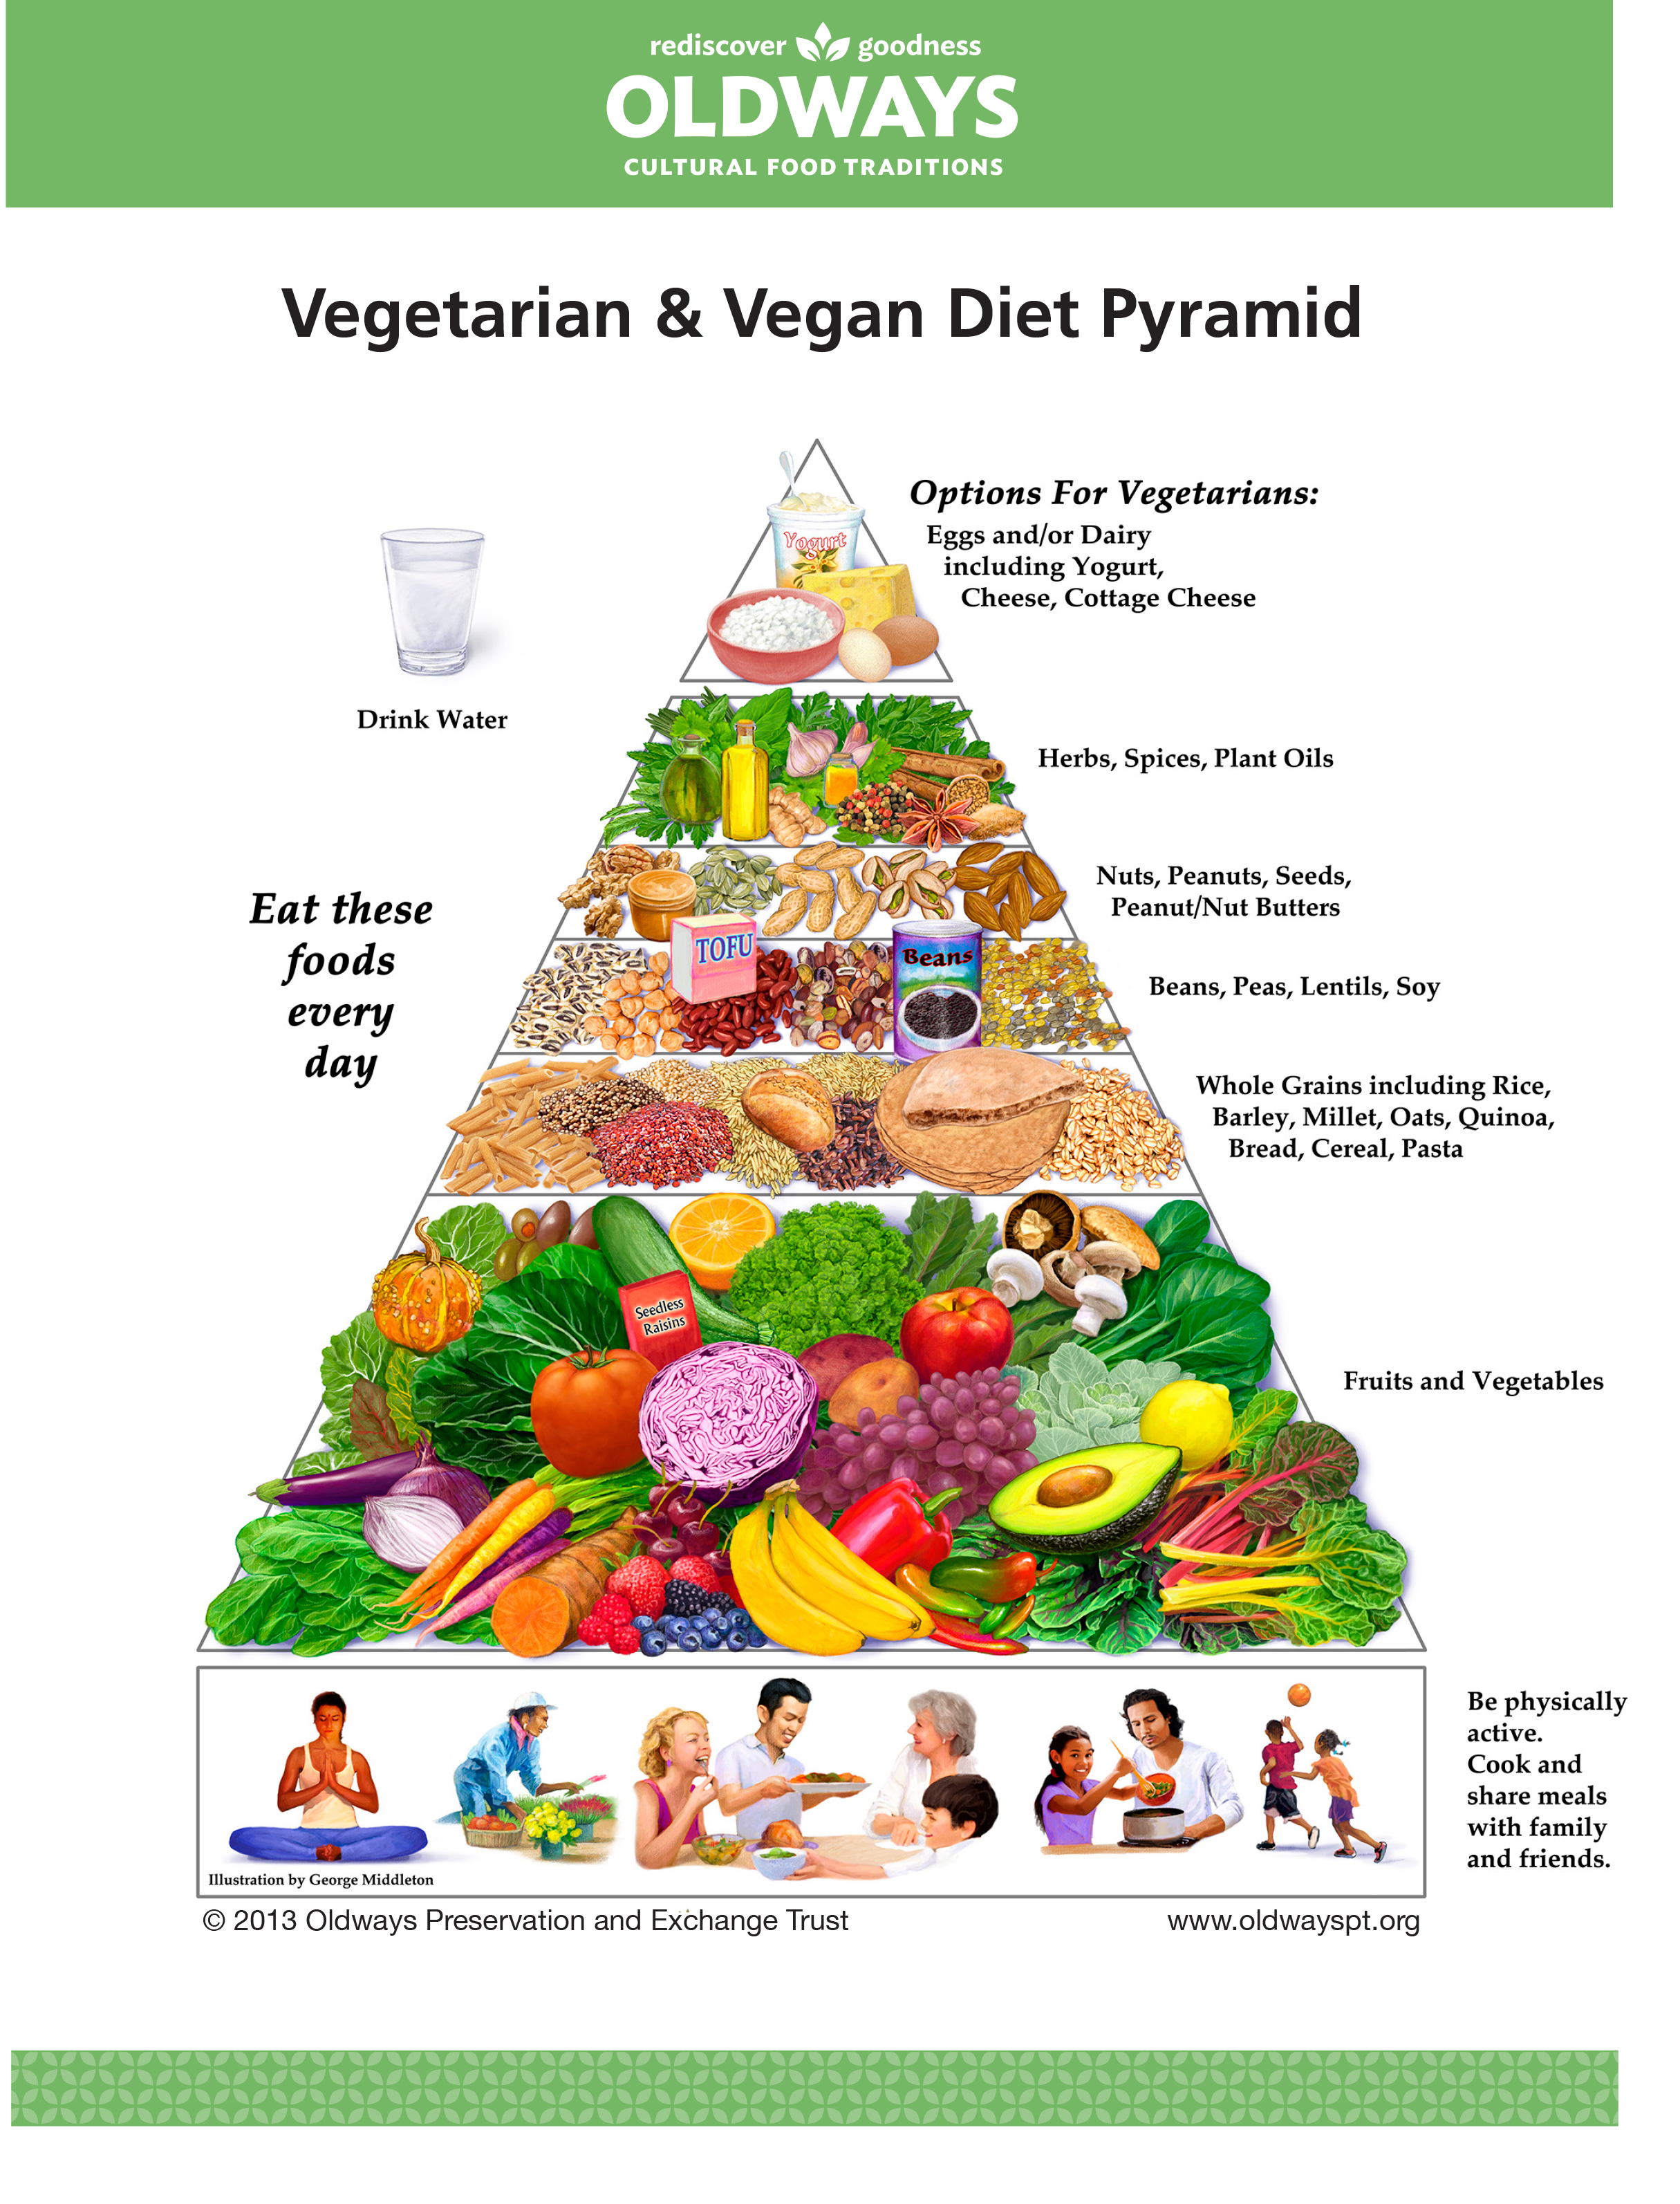 Veg-VeganDietPyramid